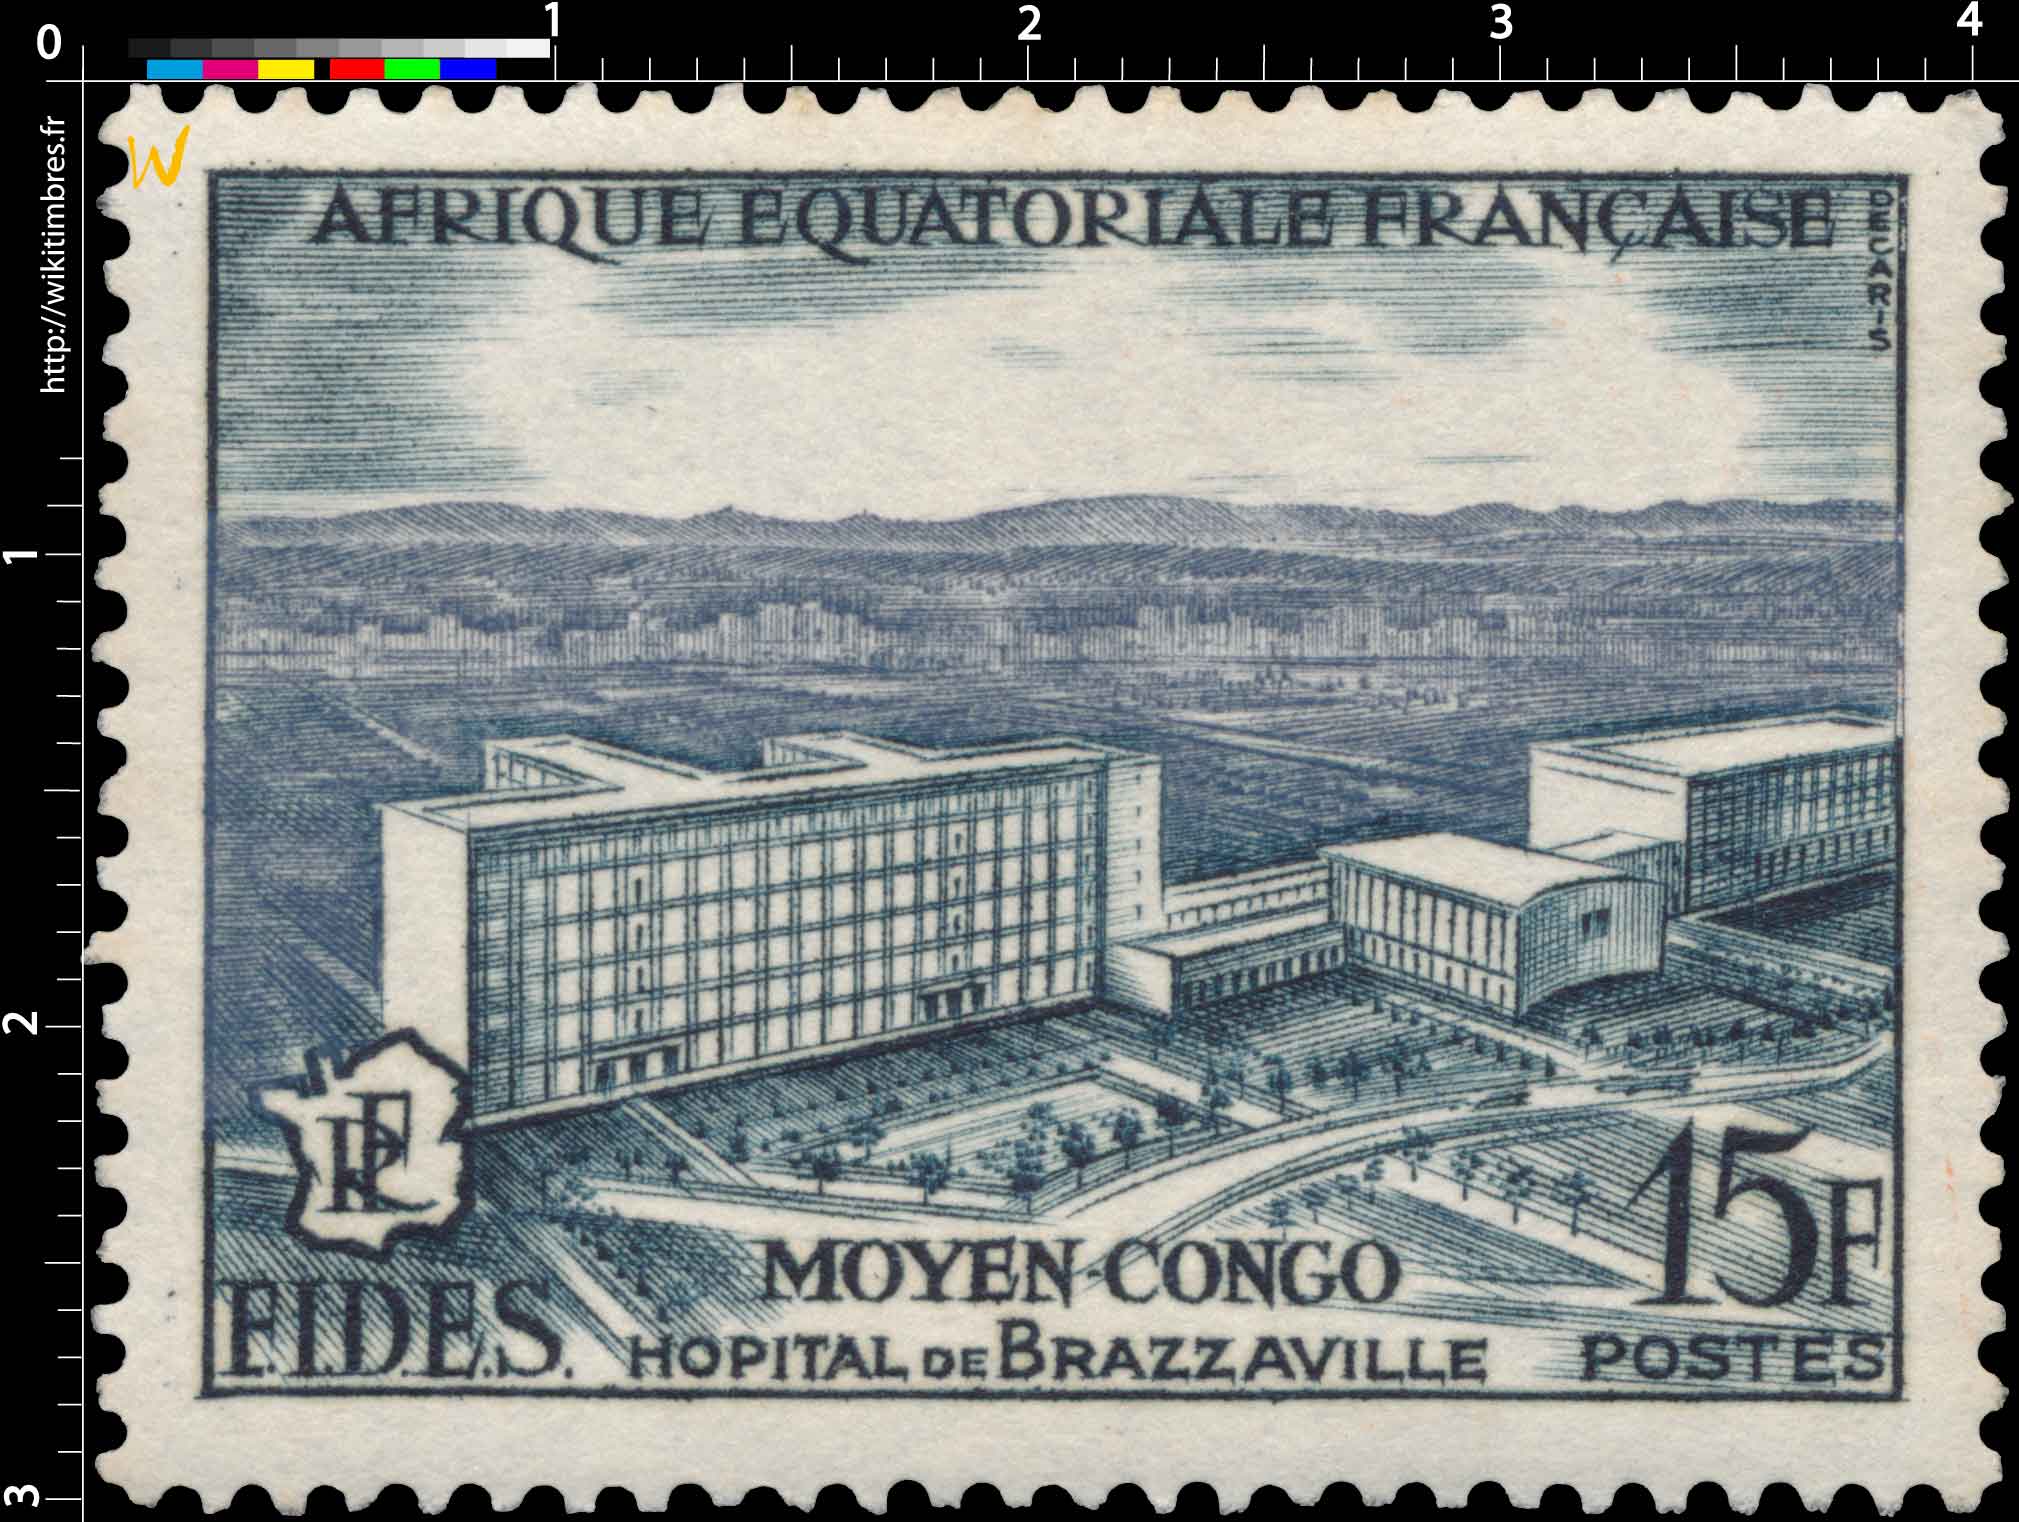 Moyen Congo Hôpital de Brazzaville Afrique Équatoriale Française